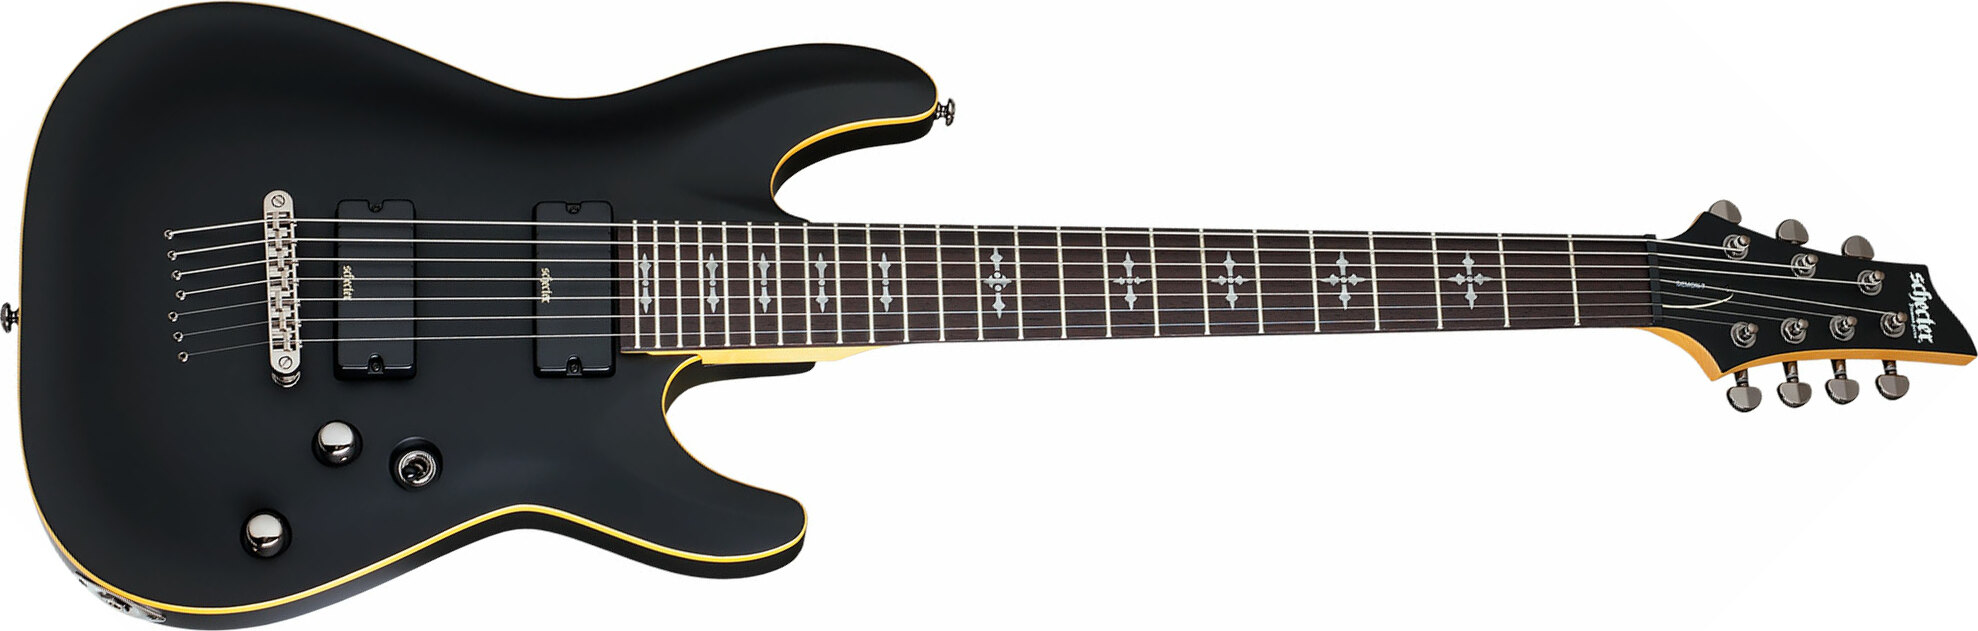 Schecter Demon-7 7c 2h Ht Wen - Aged Black Satin - 7-snarige elektrische gitaar - Main picture